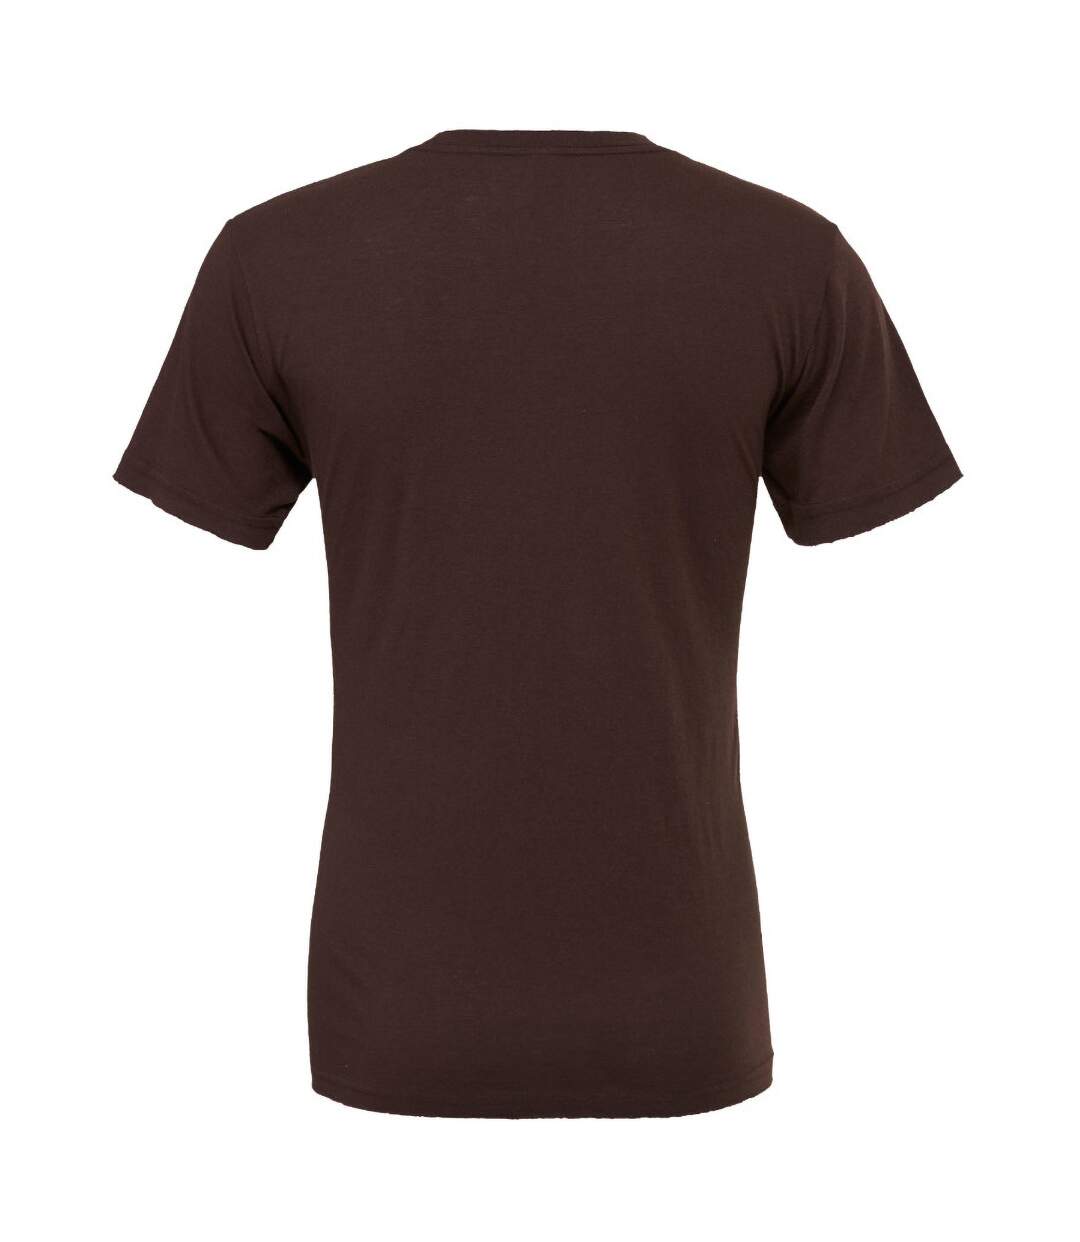 Canvas - T-shirt JERSEY - Hommes (Marron) - UTBC163